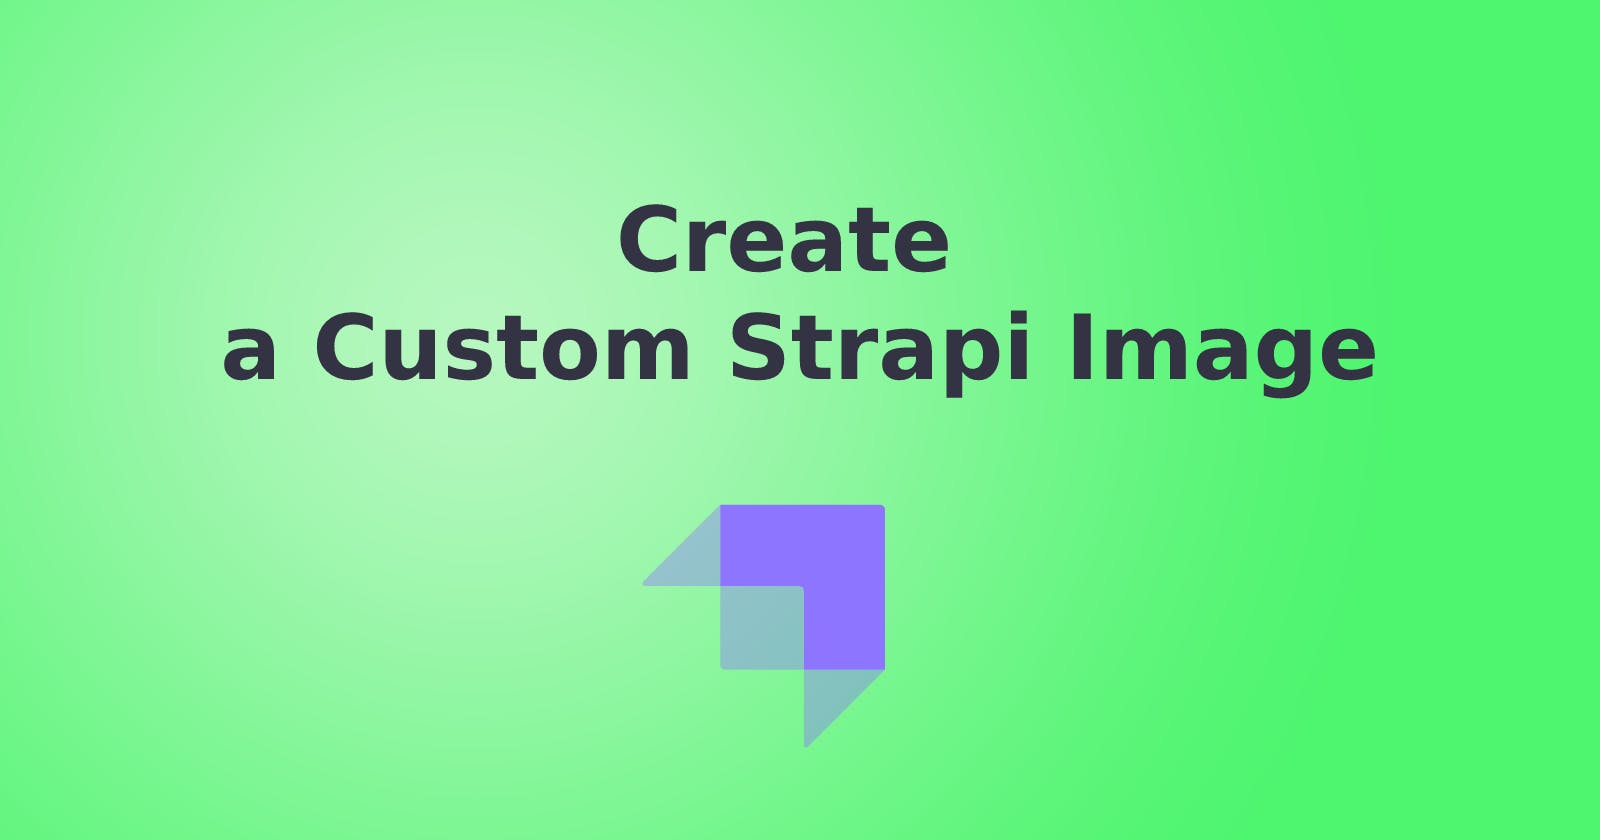 Create a Custom Strapi Image